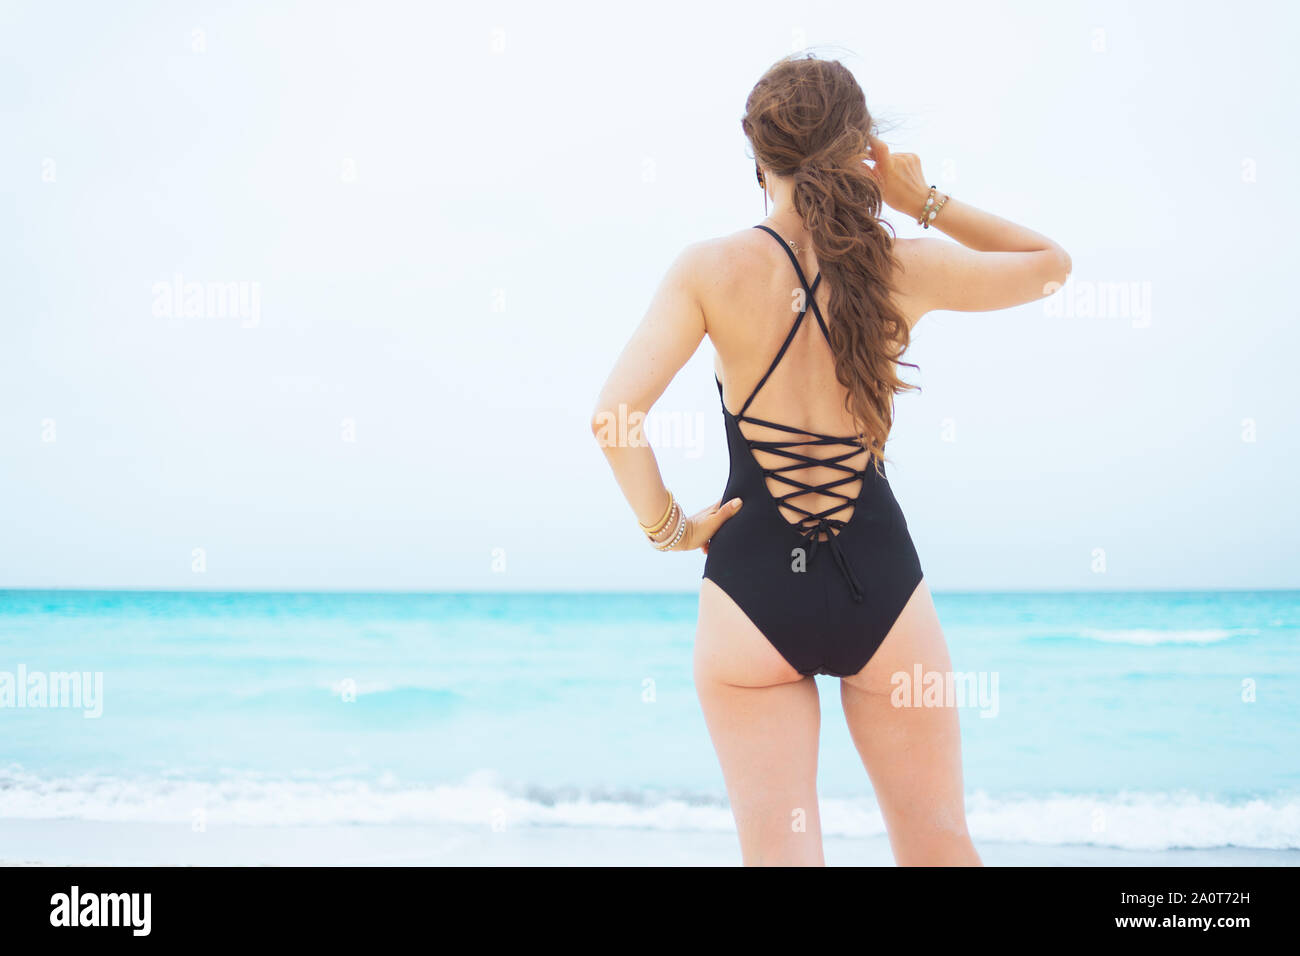 Visto desde detrás de la elegante mujer años con pelo rizado en elegante negro bañador en una playa blanca mirando en la distancia Fotografía de stock Alamy